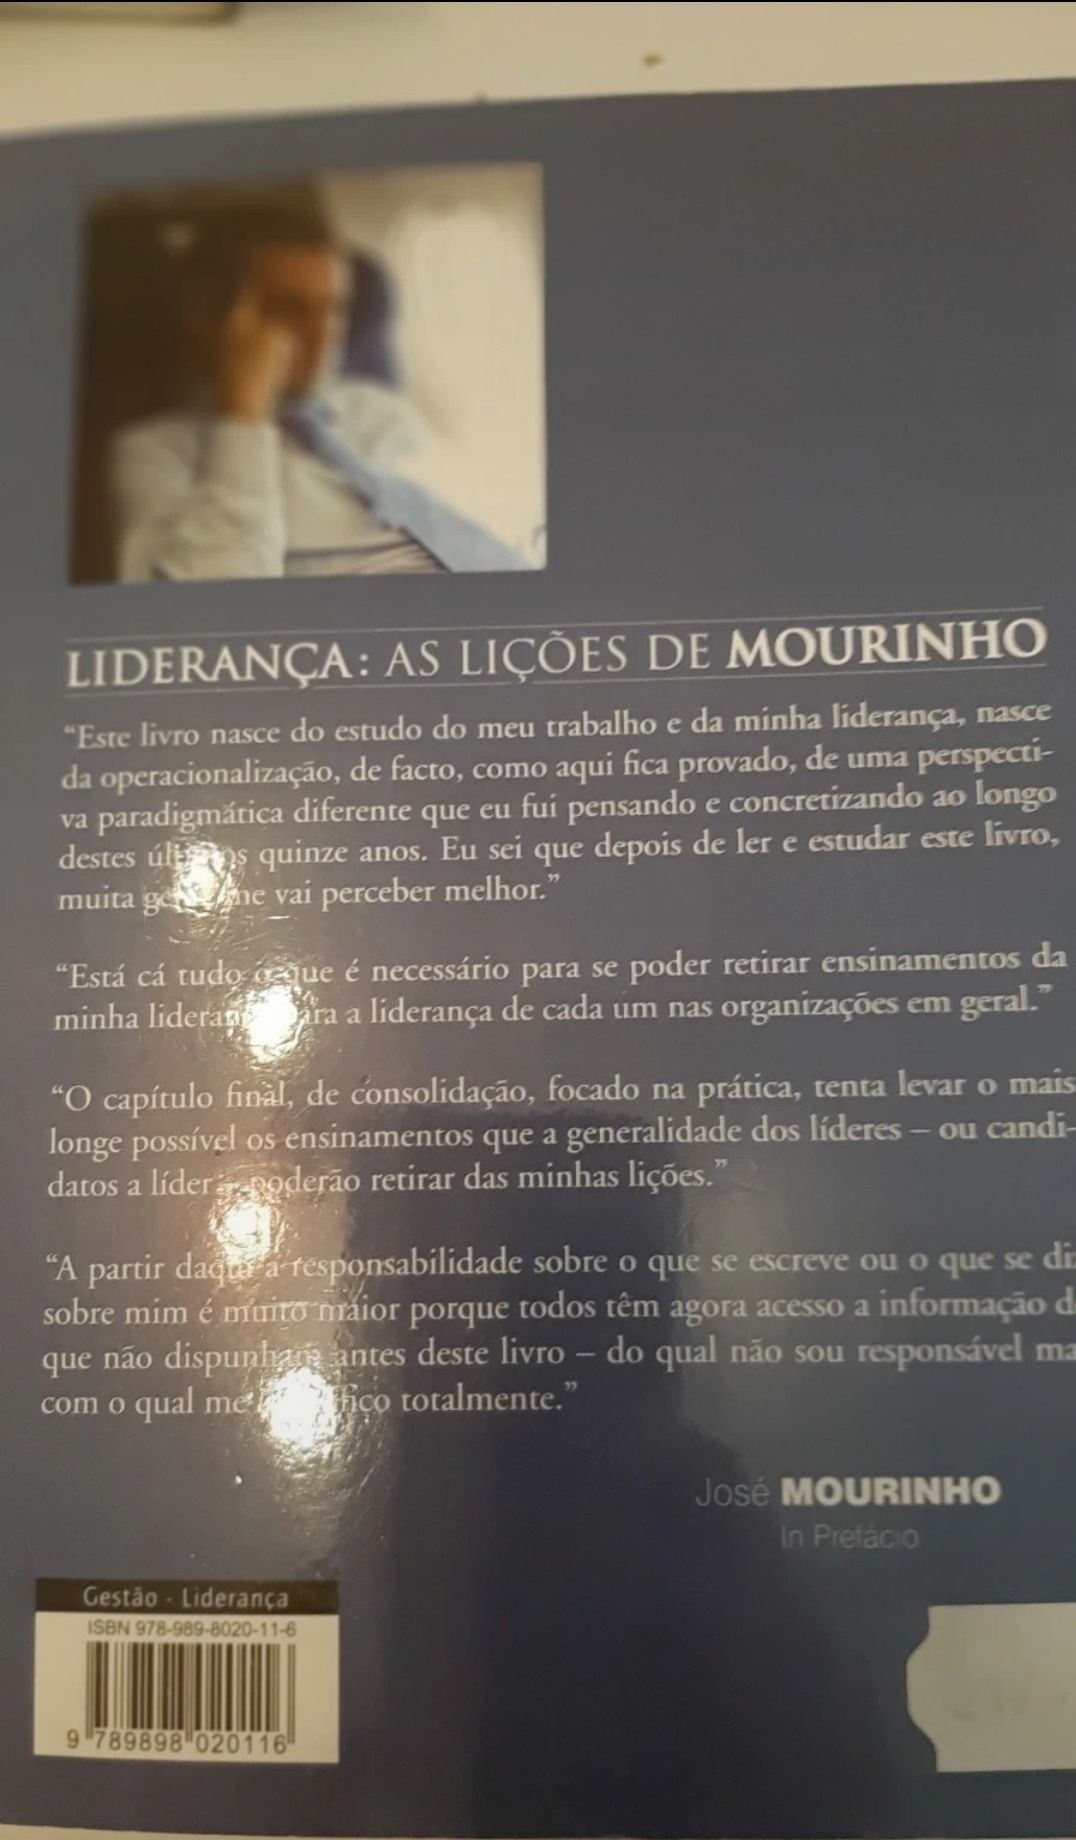 Livro sobre liderança " As lições de José Mourinho "